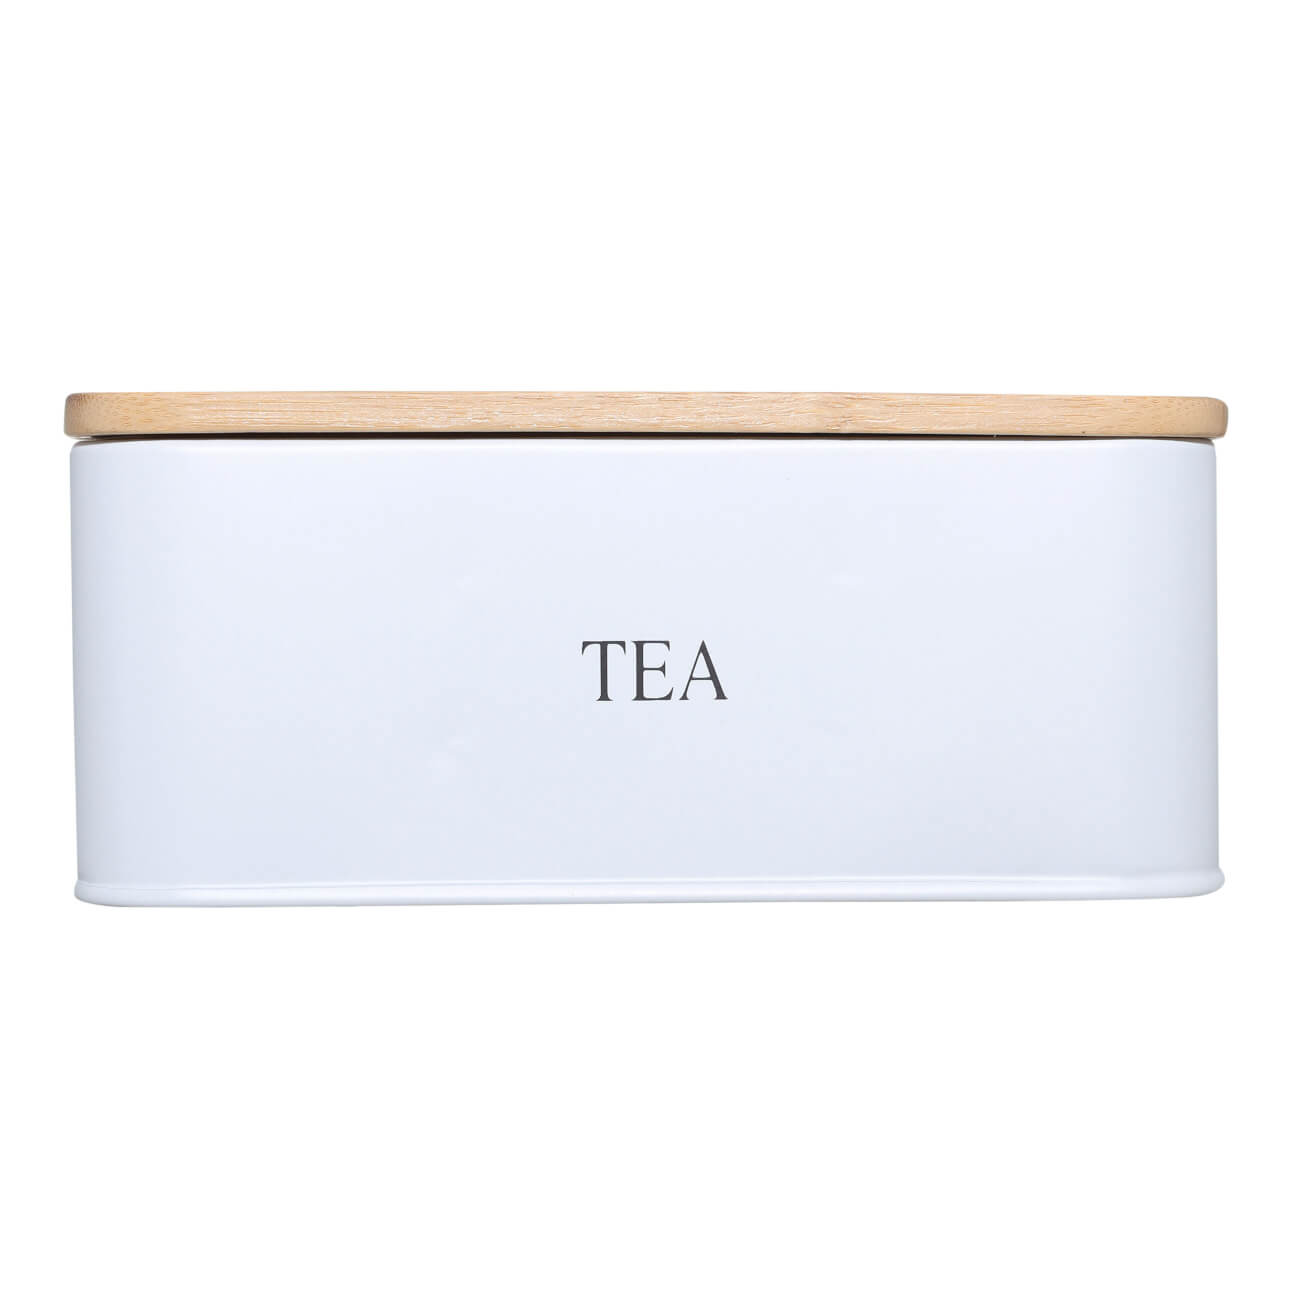 Коробка для чая, 18х15 см, 6 отд, сталь/бамбук, прямоугольная, белая, Nostalgia